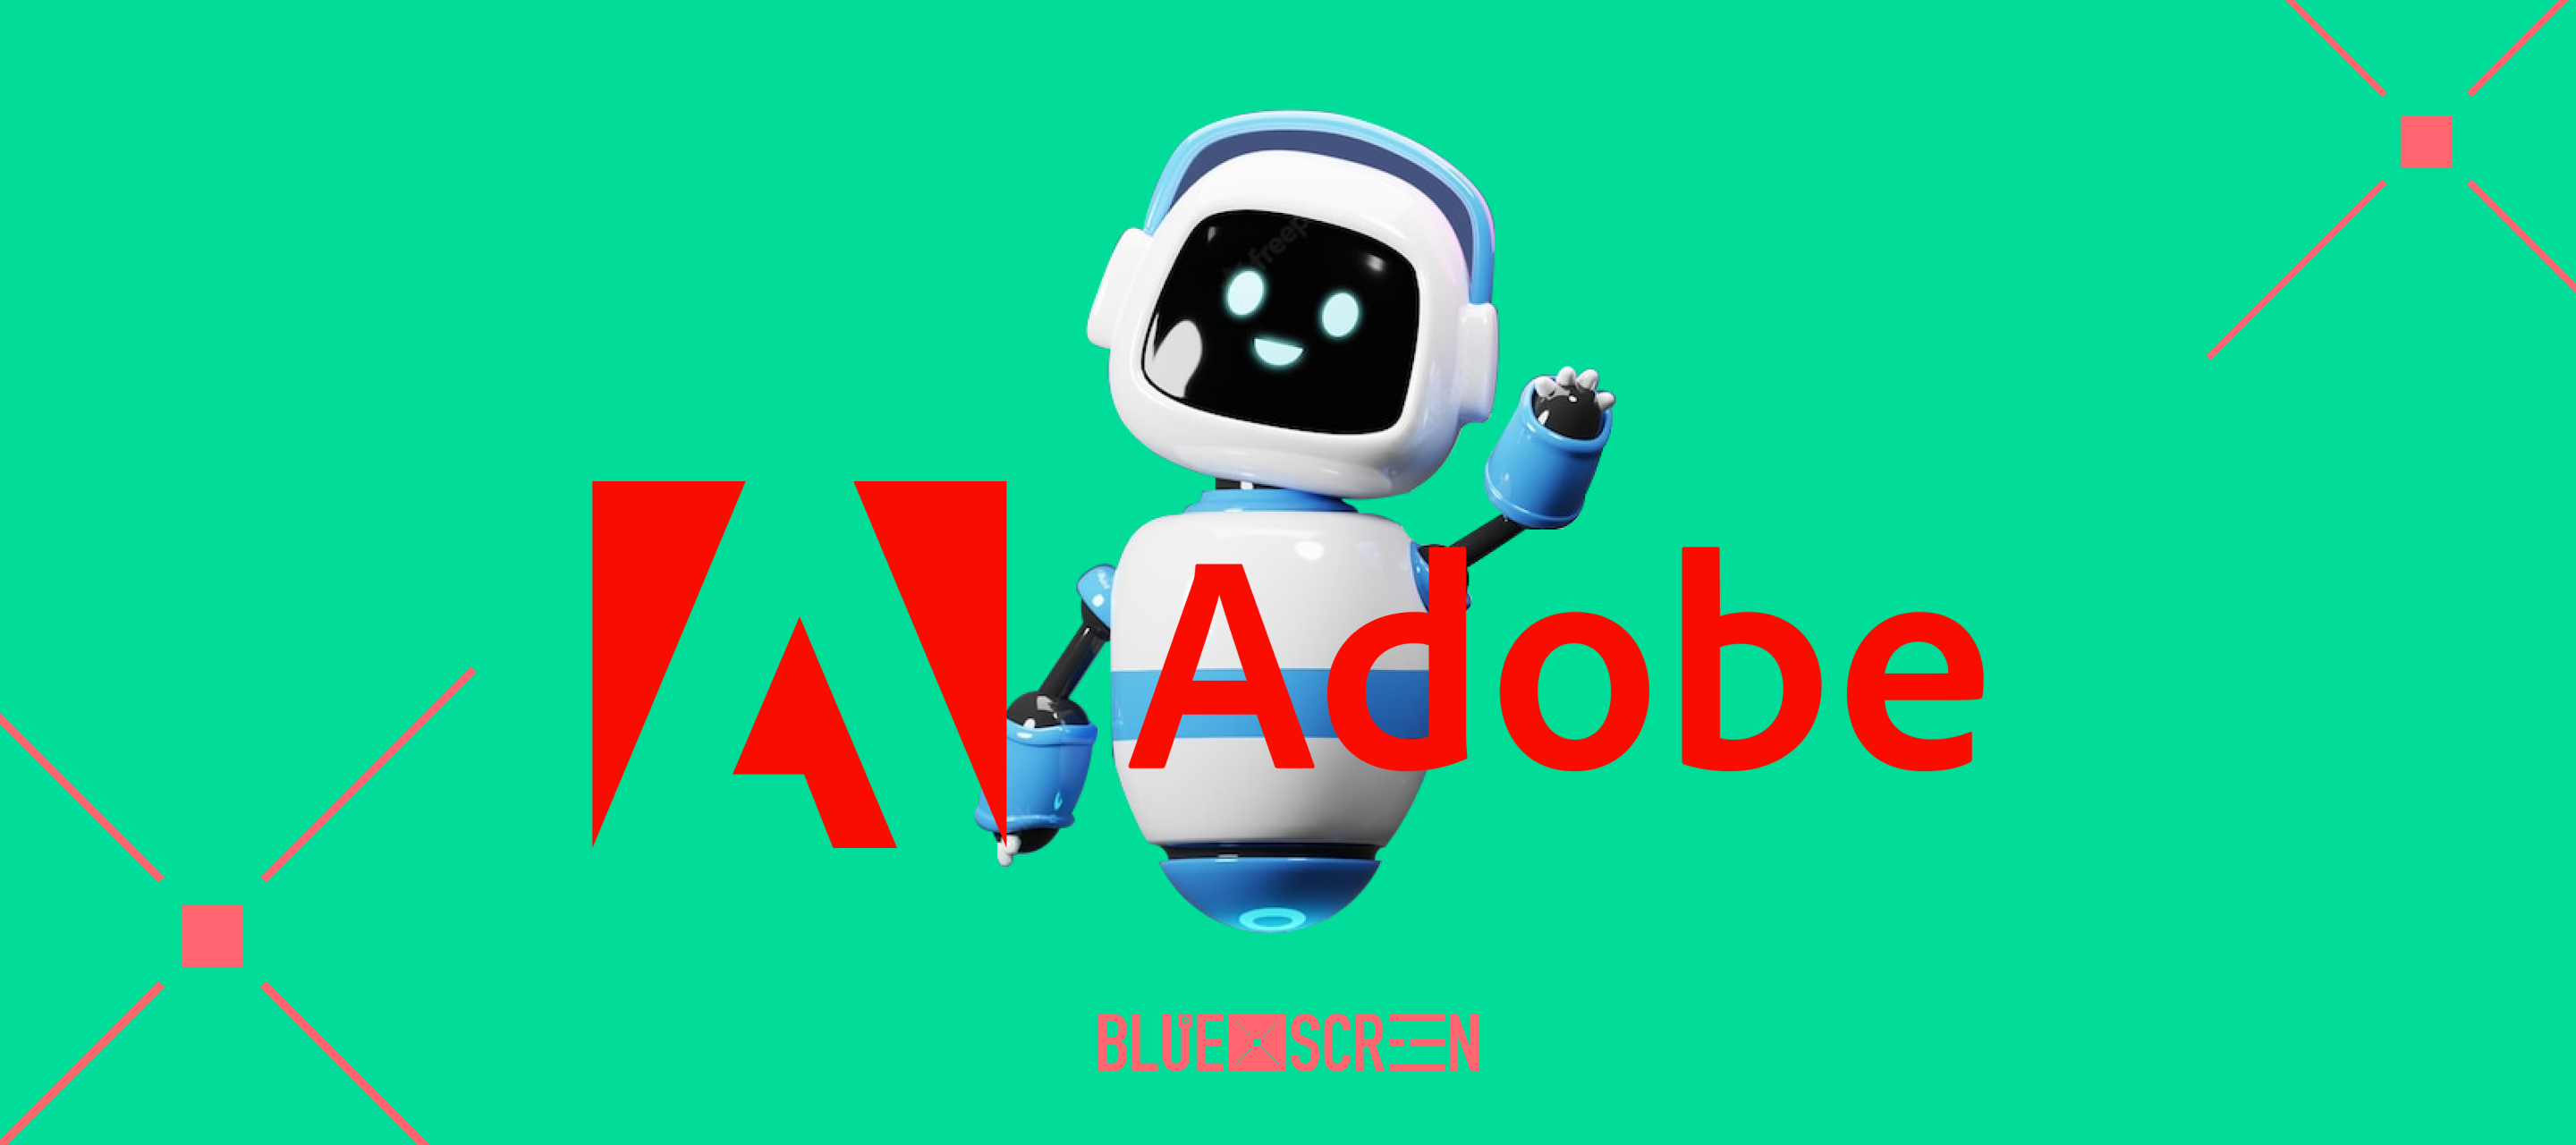 Adobe представила новые возможности ИИ-инструментов